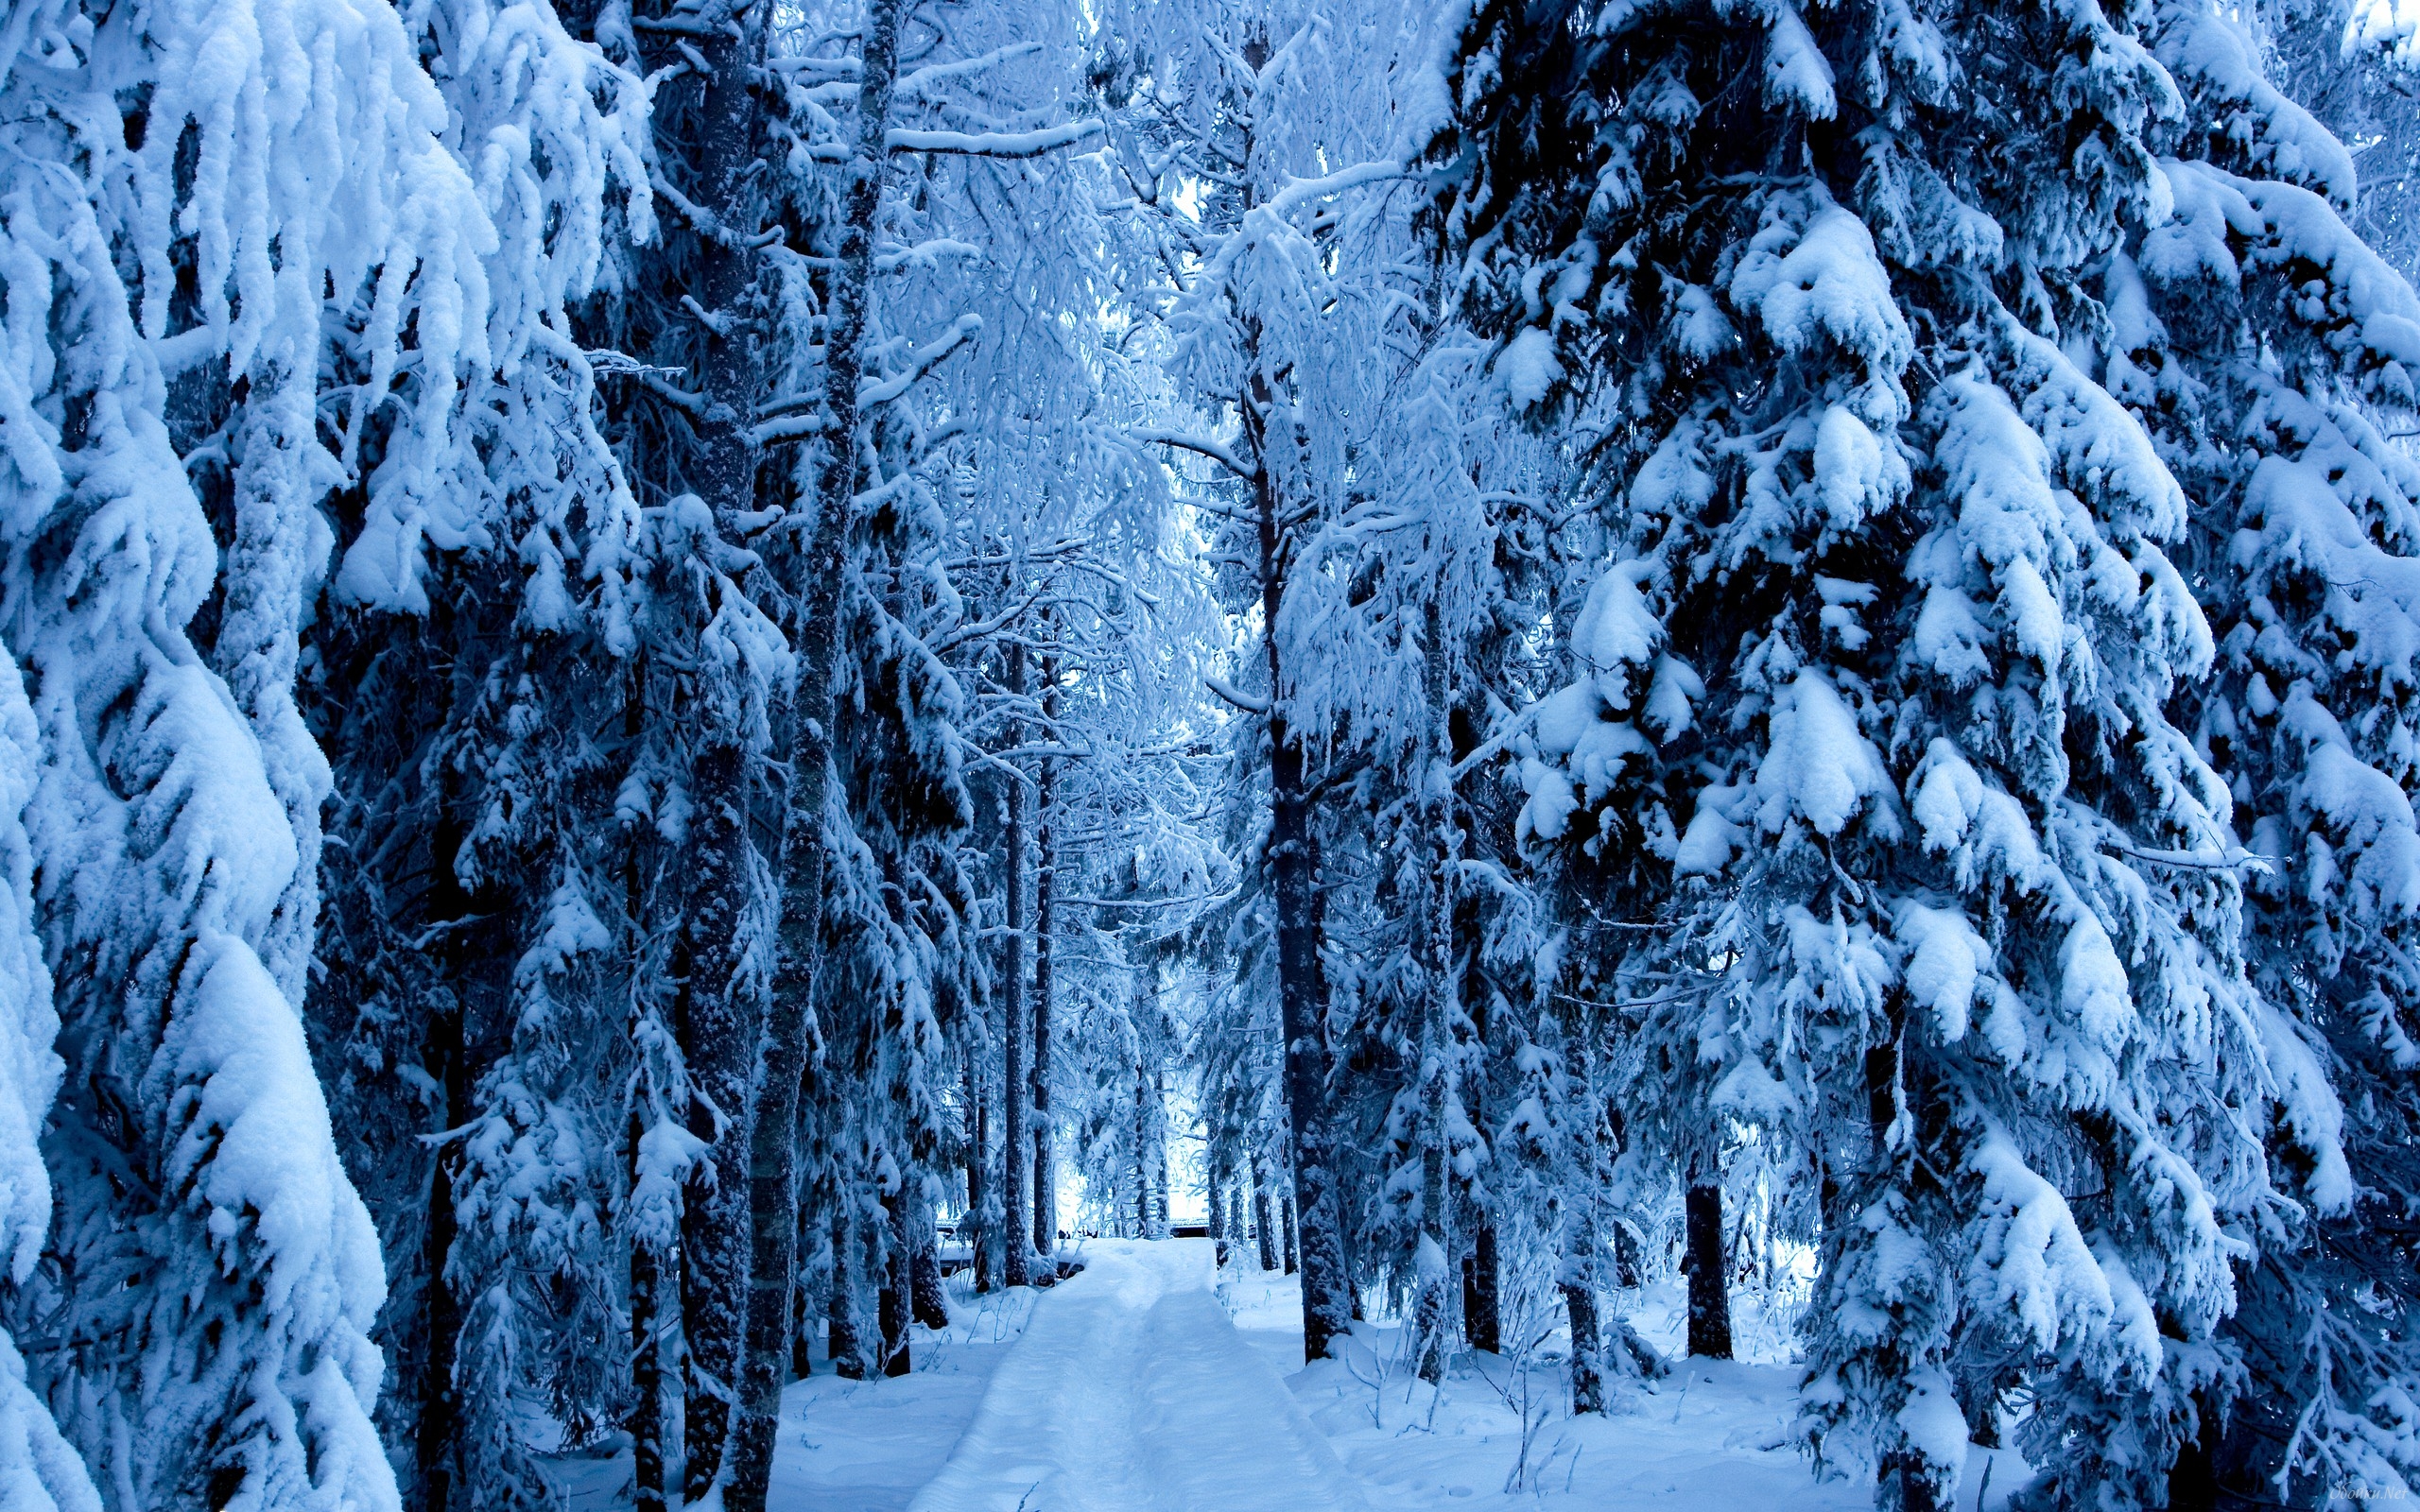 Bức hình nền rừng tuyết sẽ khiến bạn lạc vào một thế giới thần tiên với những thảm cỏ phủ đầy tuyết trắng. Hãy để lời thì thầm của những tán cây làm bạn choáng ngợp!